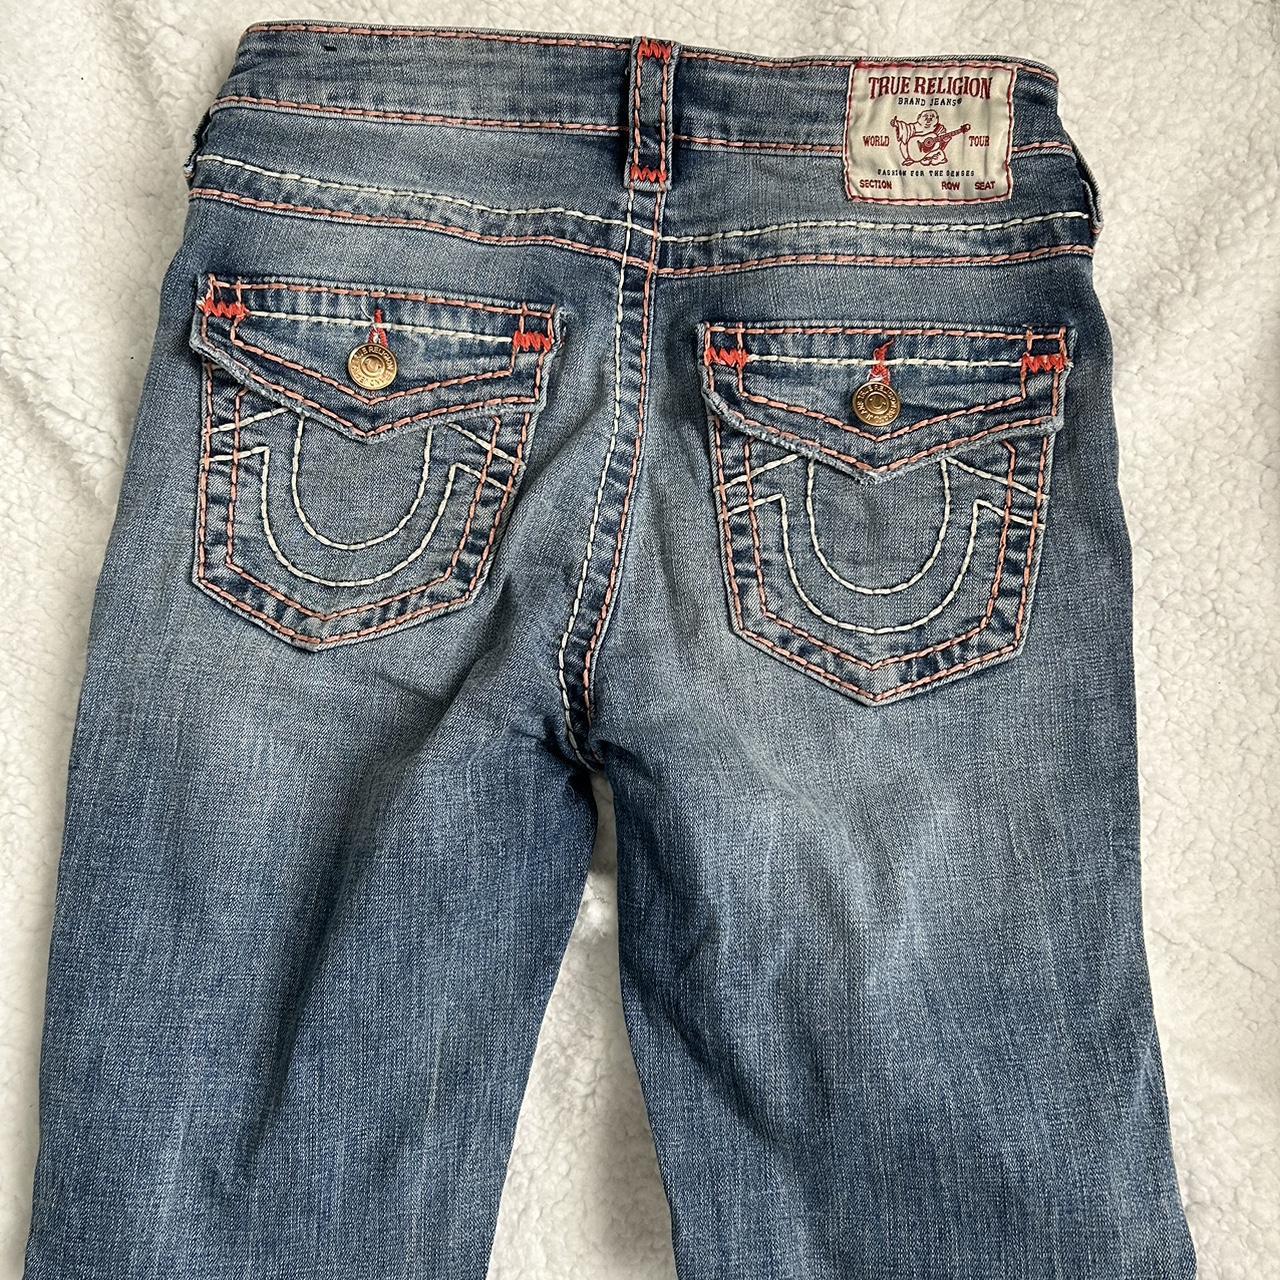 True religion mid rise skinny jeans size 28. It has... - Depop